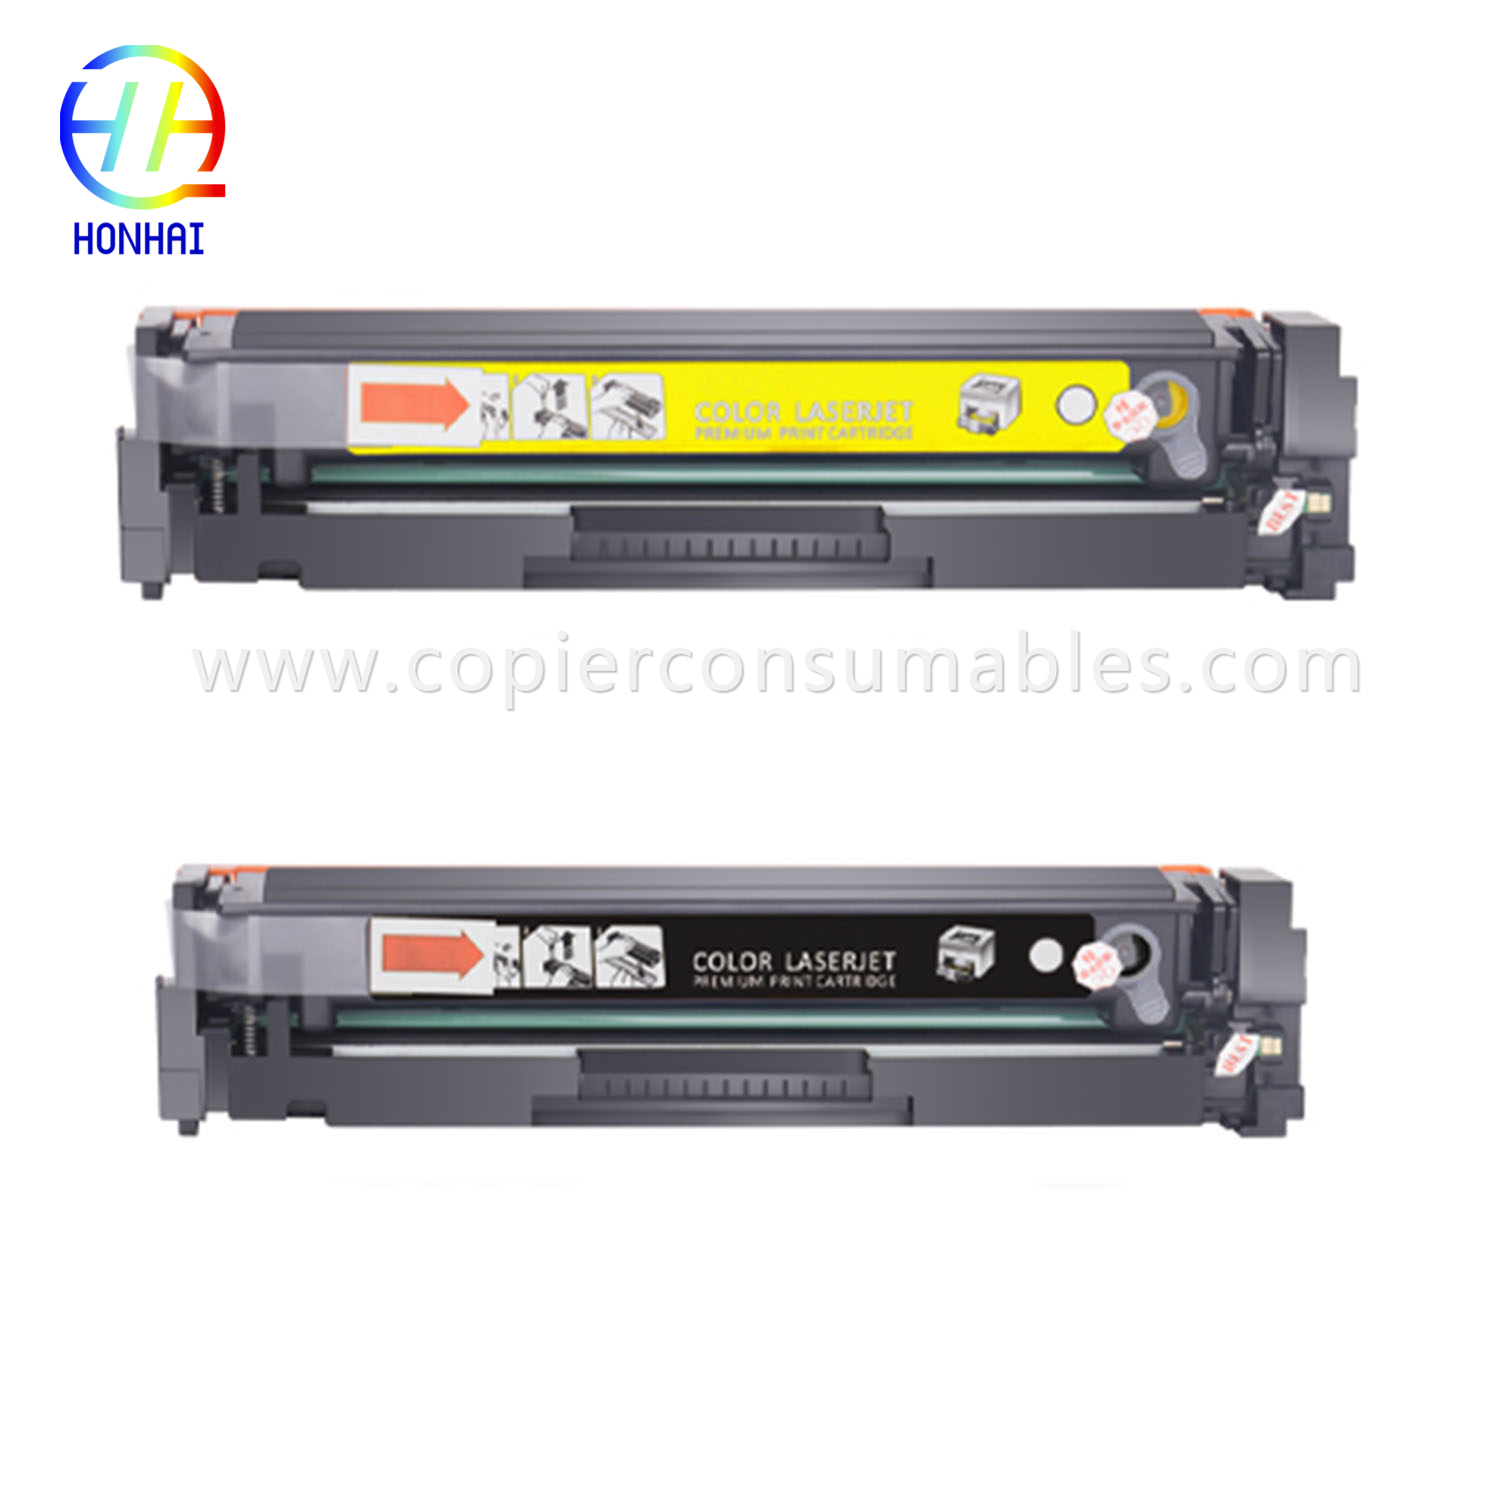 کارتریج تونر برای HP Color Laserjet PRO Mfp M180 M180n M181 M181fw M154A M154nw (CF531A CF532A CF533A)